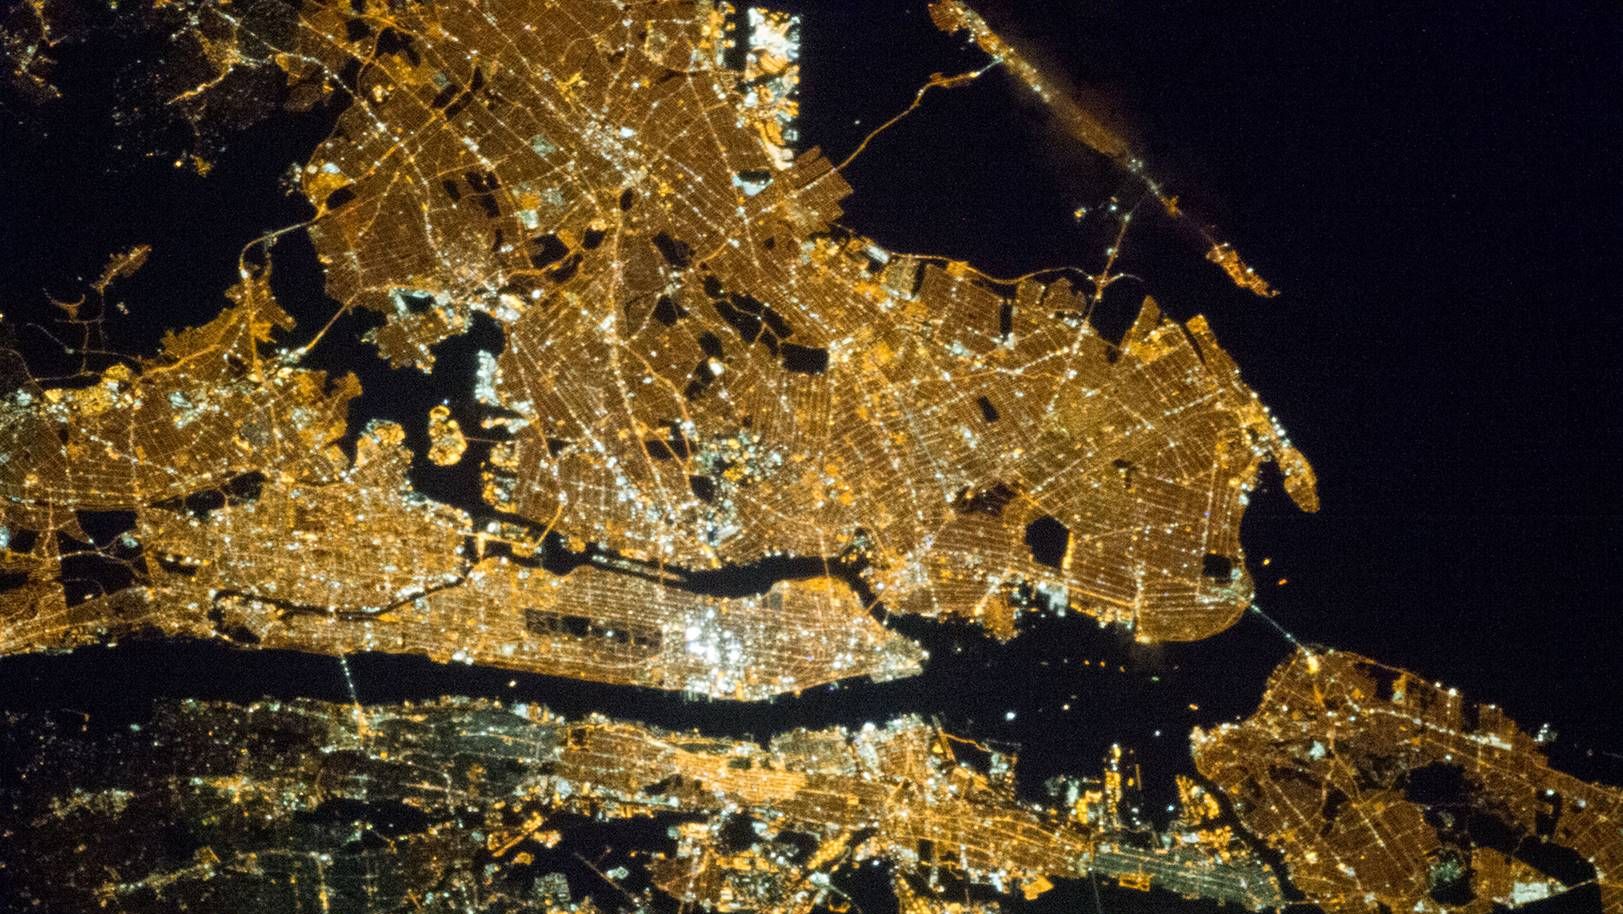 Нью-Йорк. Электроснабжение ночью. Снимок из космоса